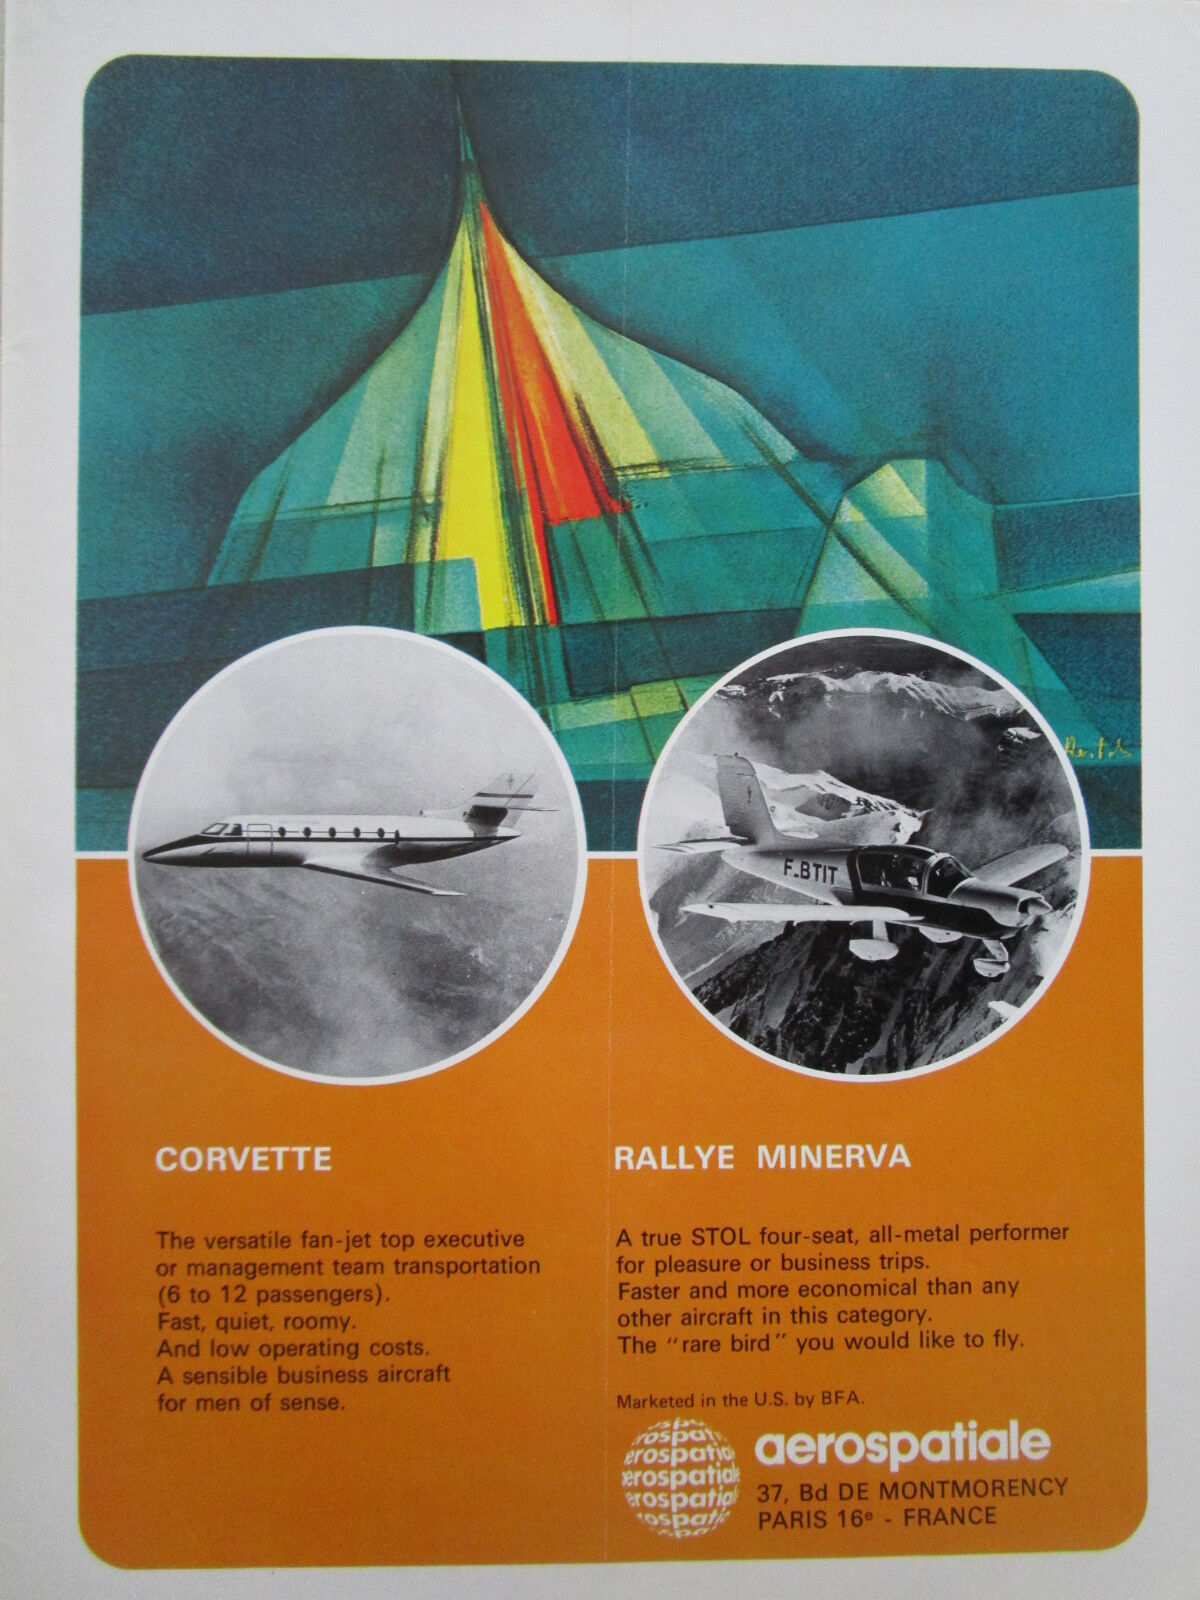 5/1972 CONCORDE AEROSPACE PUB CORVETTE PLANE RALLY MINERVA AIRCRAFT AD